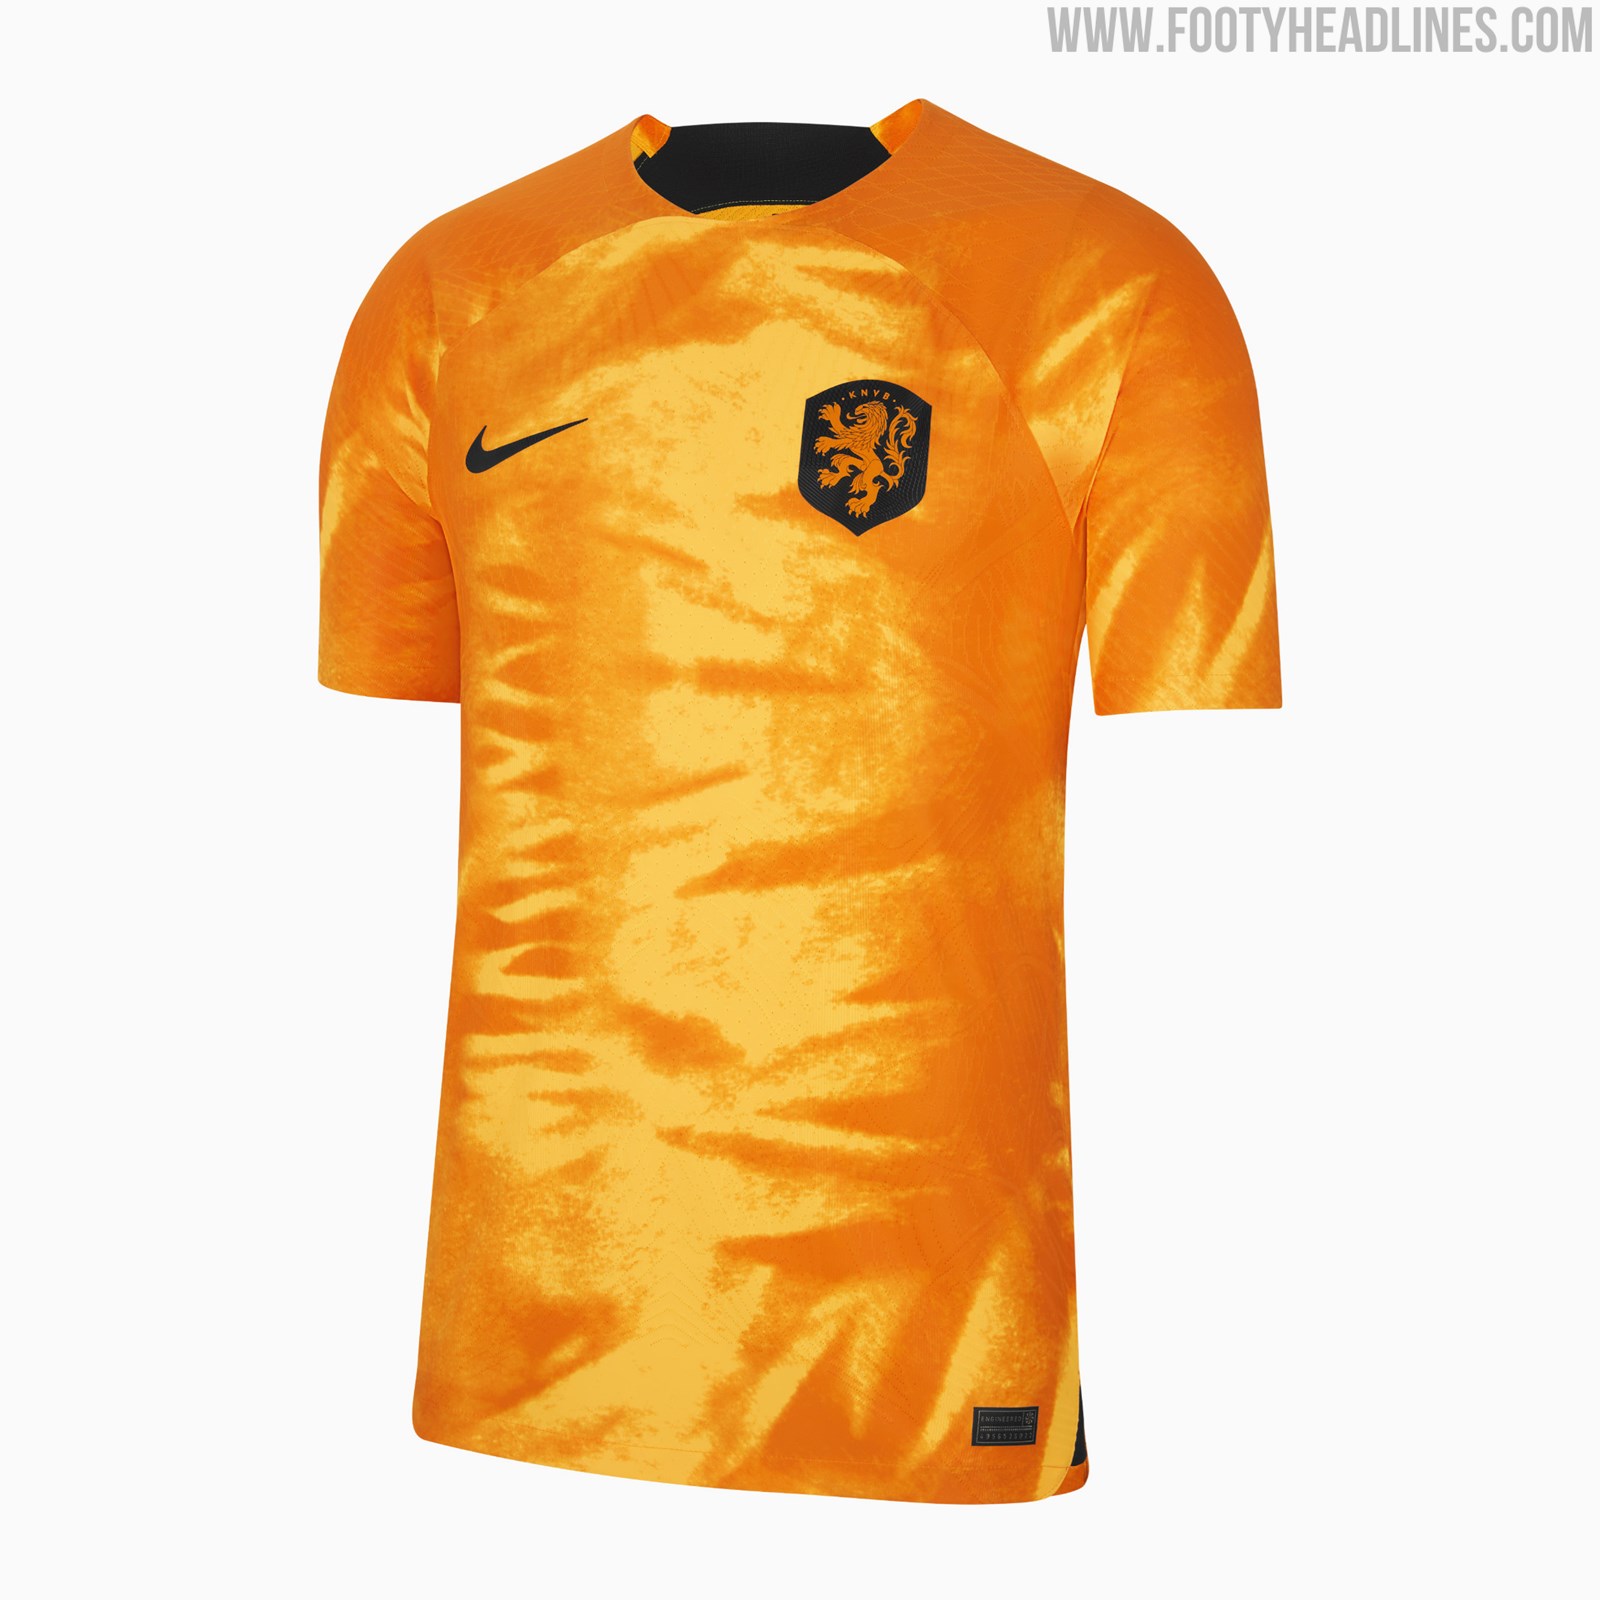 moordenaar procedure Mitt Netherlands 2022 World Cup Home & Away Kits Released - Footy Headlines